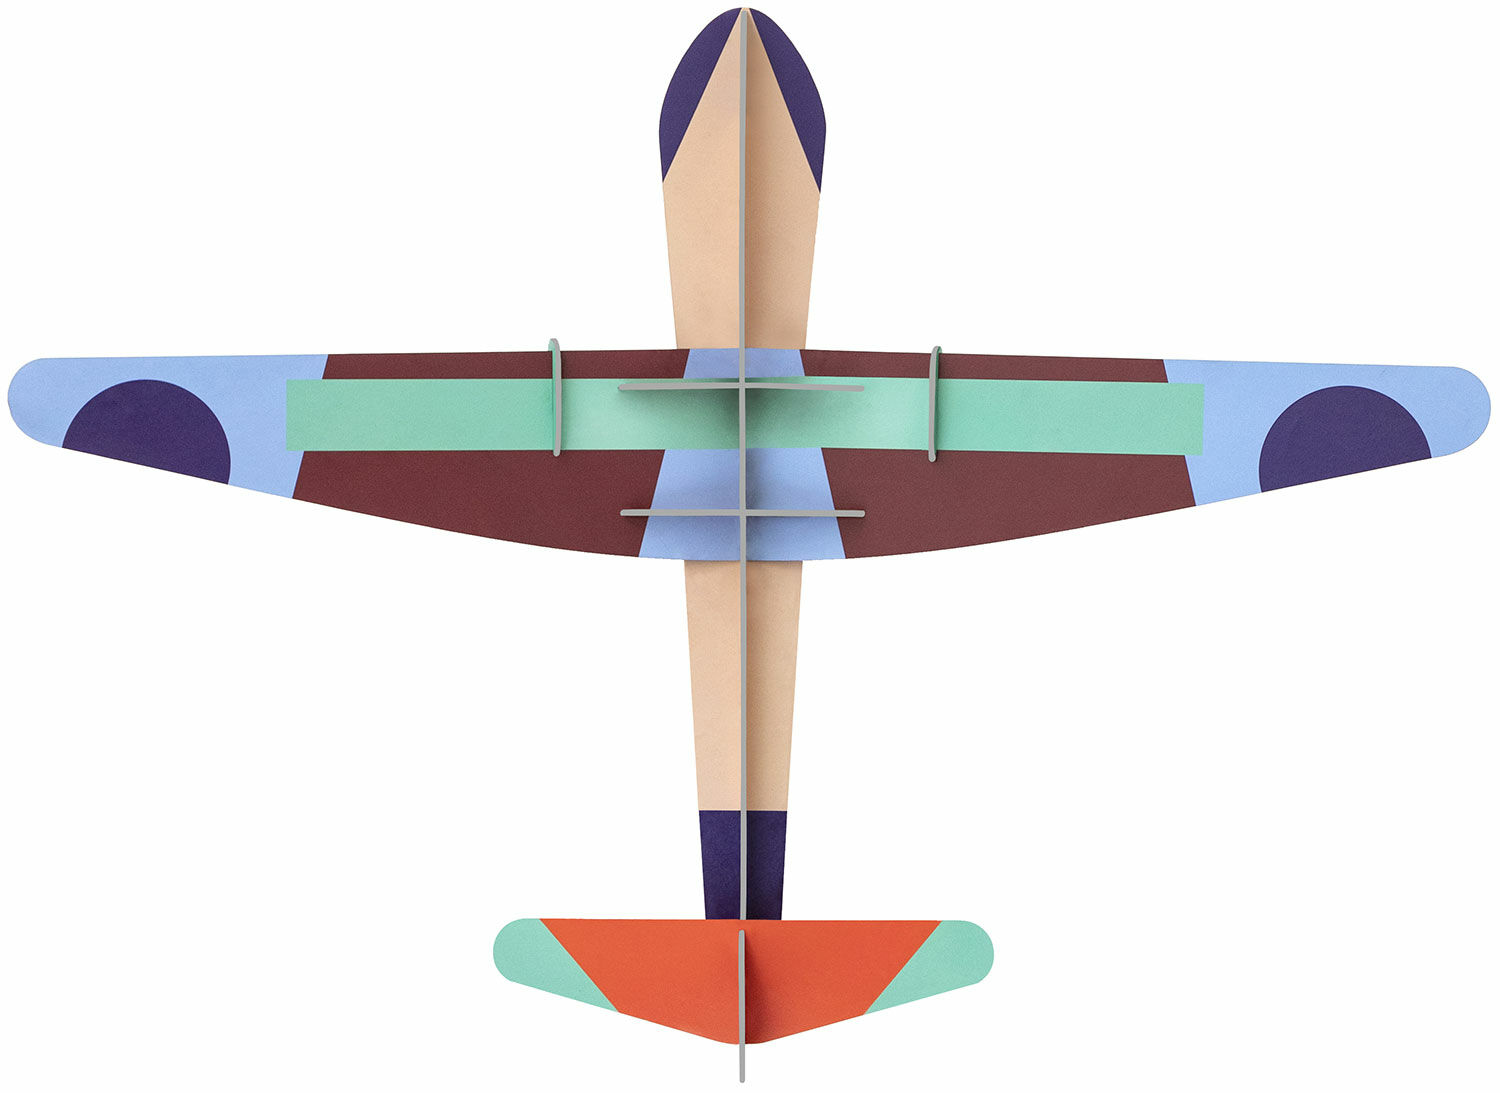 3D-Wandobjekt "Deluxe Glider Plane" aus recyceltem Karton, DIY von studio ROOF